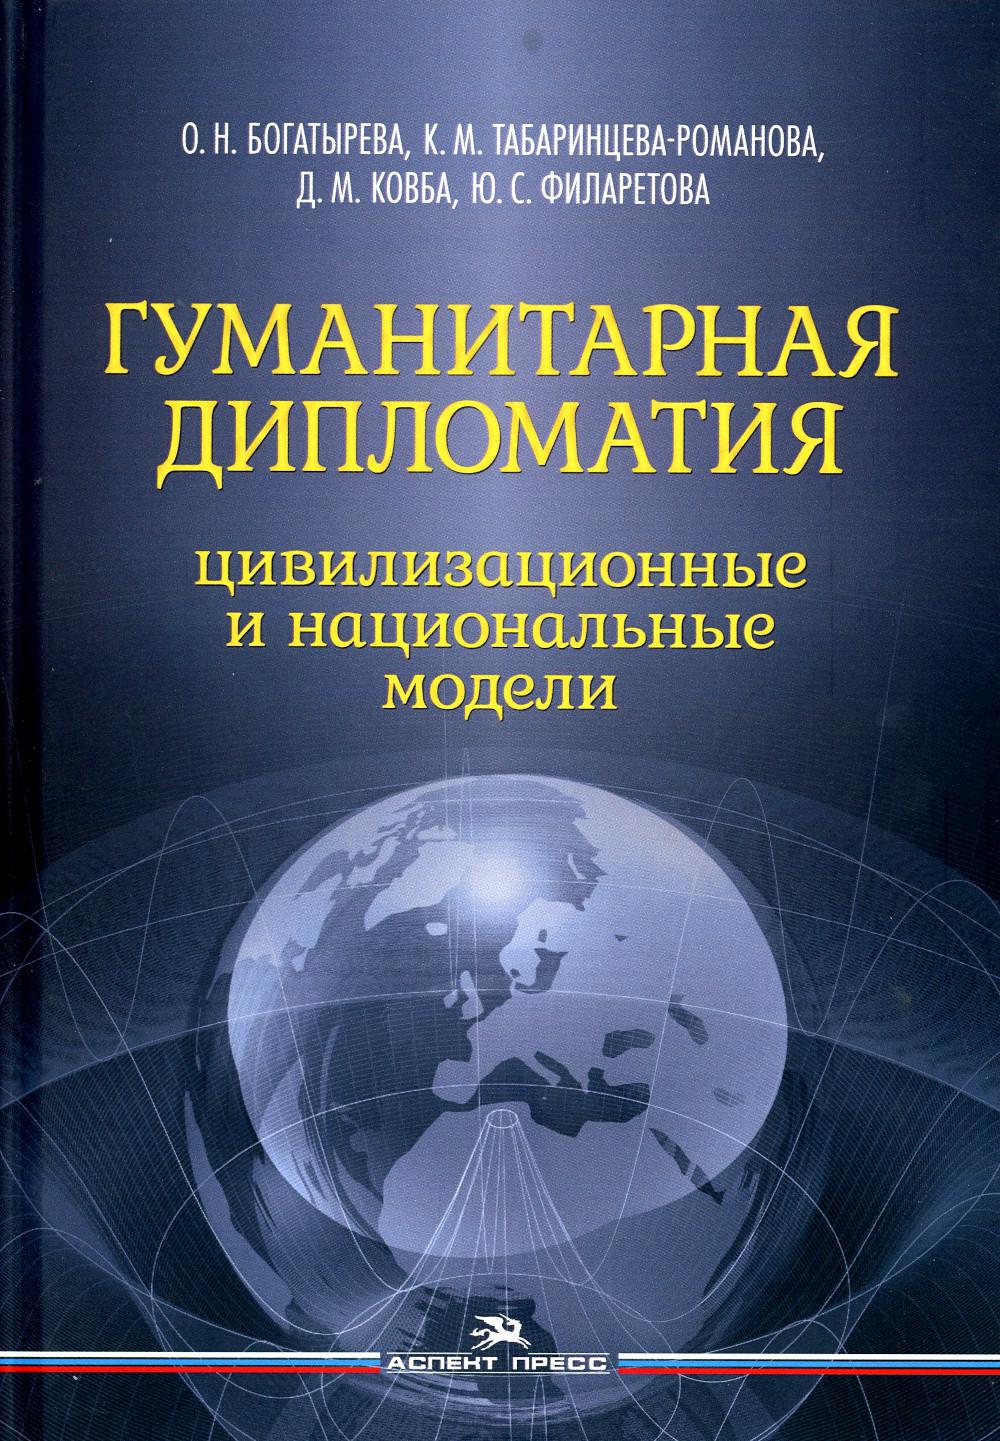 фото Книга гуманитарная дипломатия: цивилизационные и национальные модели аспект пресс